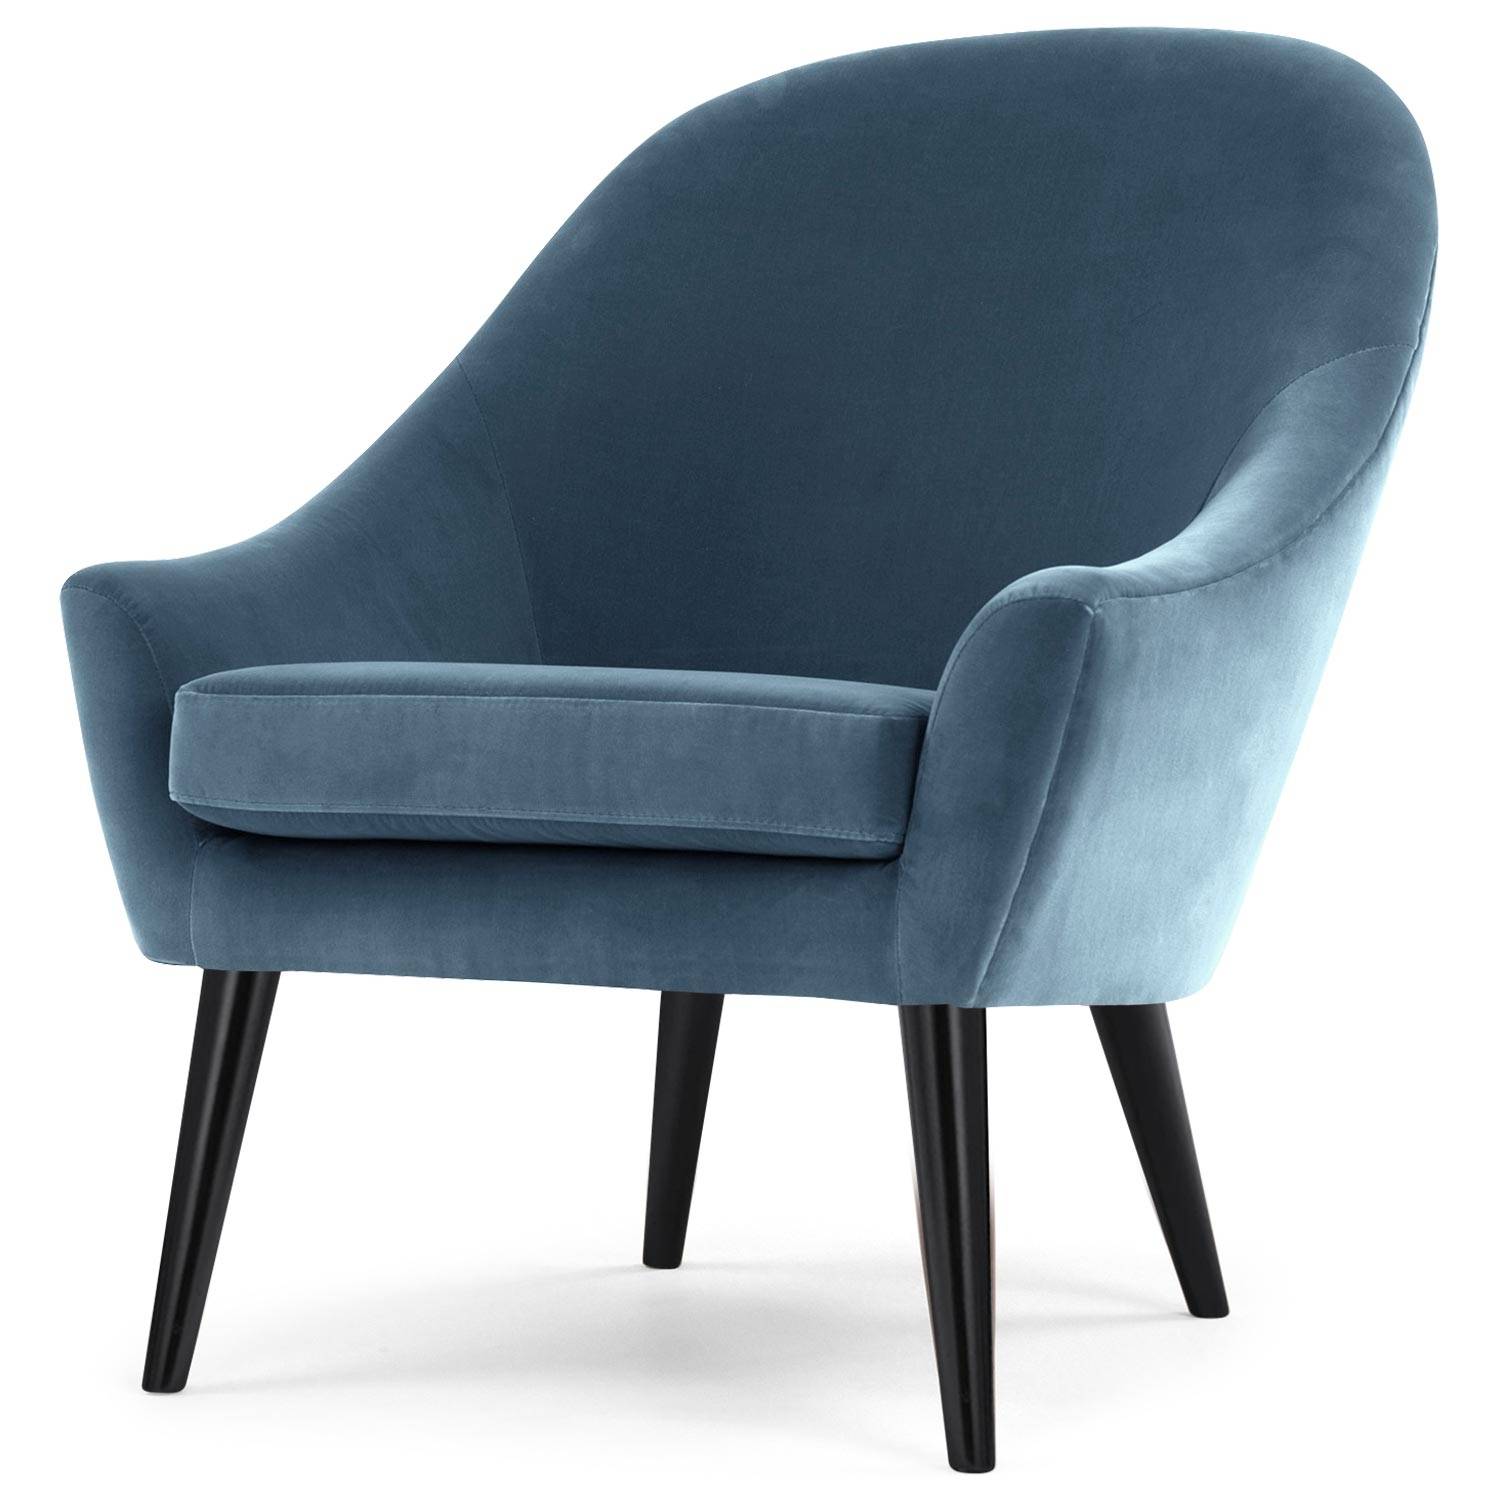 gastvrouw opmerking Knikken Scandinavische Dakota fauteuil van blauw fluweel